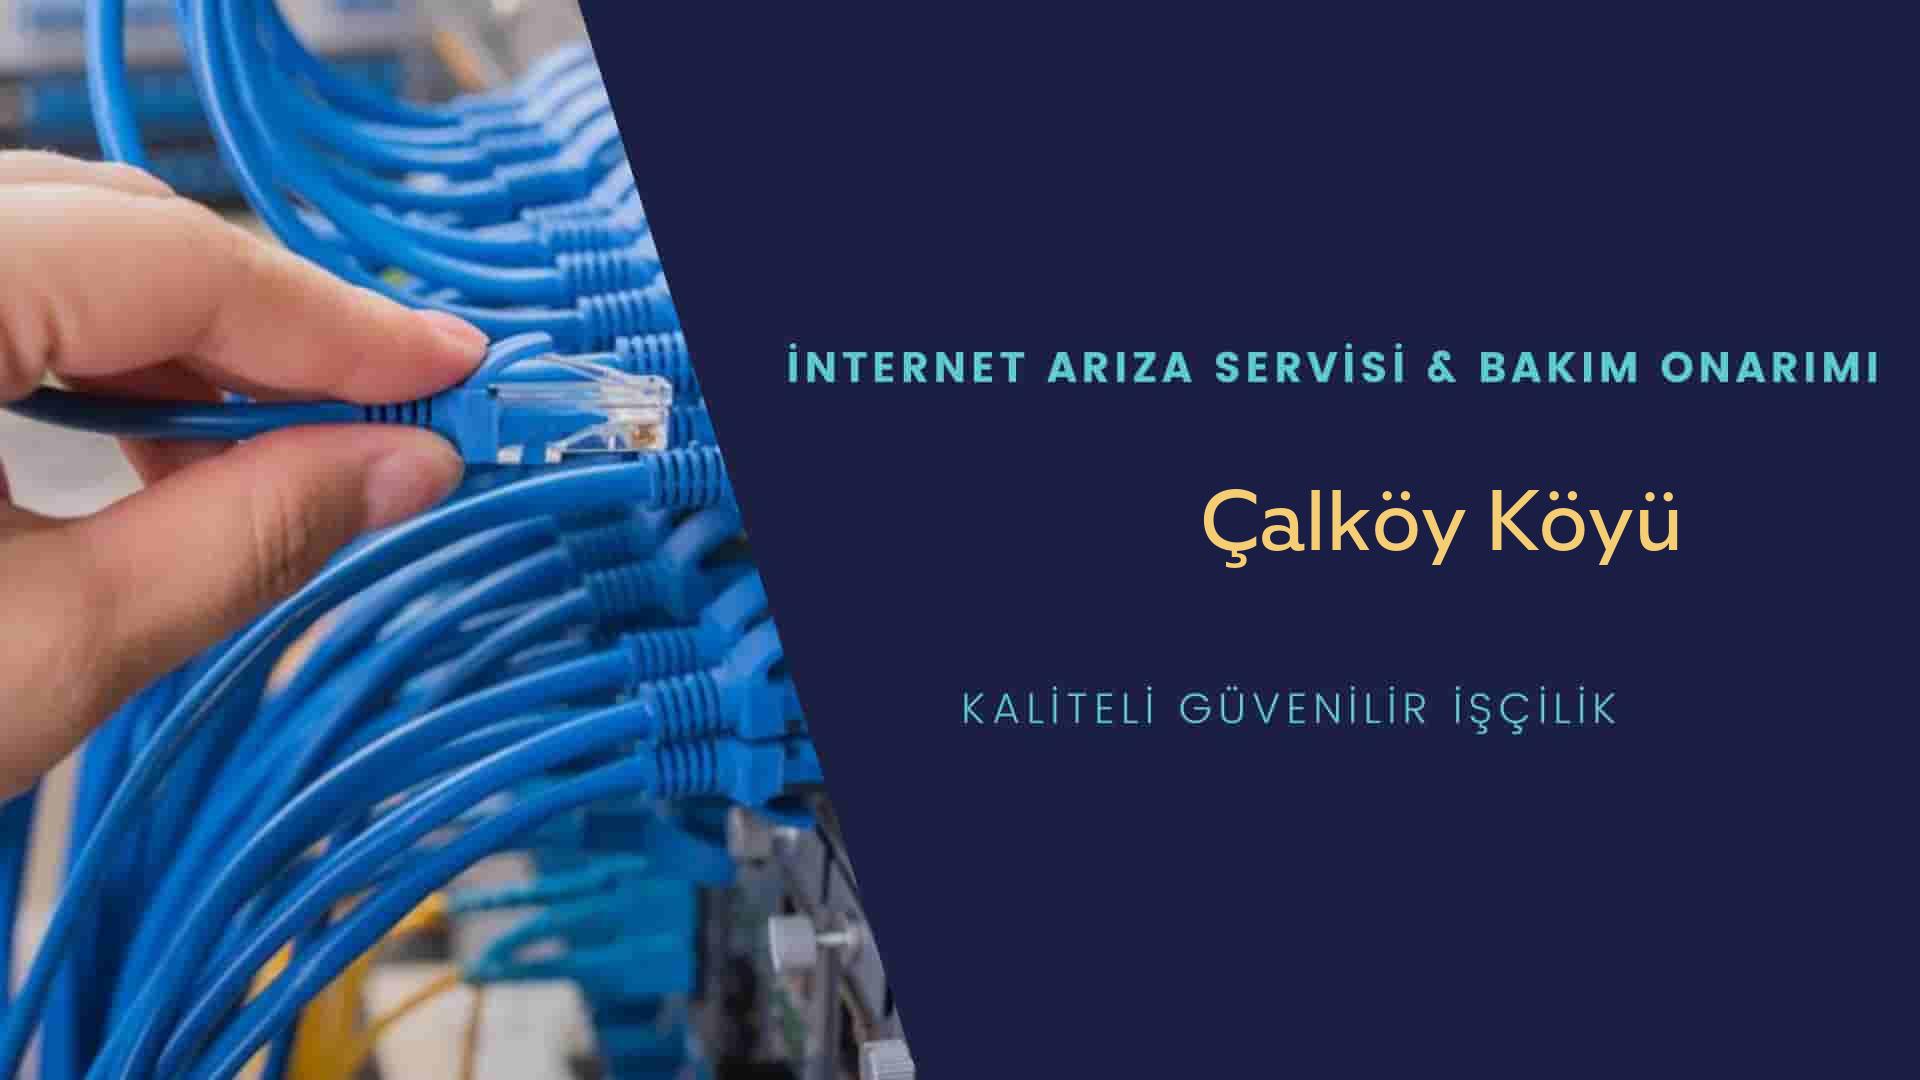 Çalköy Köyü internet kablosu çekimi yapan yerler veya elektrikçiler mi? arıyorsunuz doğru yerdesiniz o zaman sizlere 7/24 yardımcı olacak profesyonel ustalarımız bir telefon kadar yakındır size.